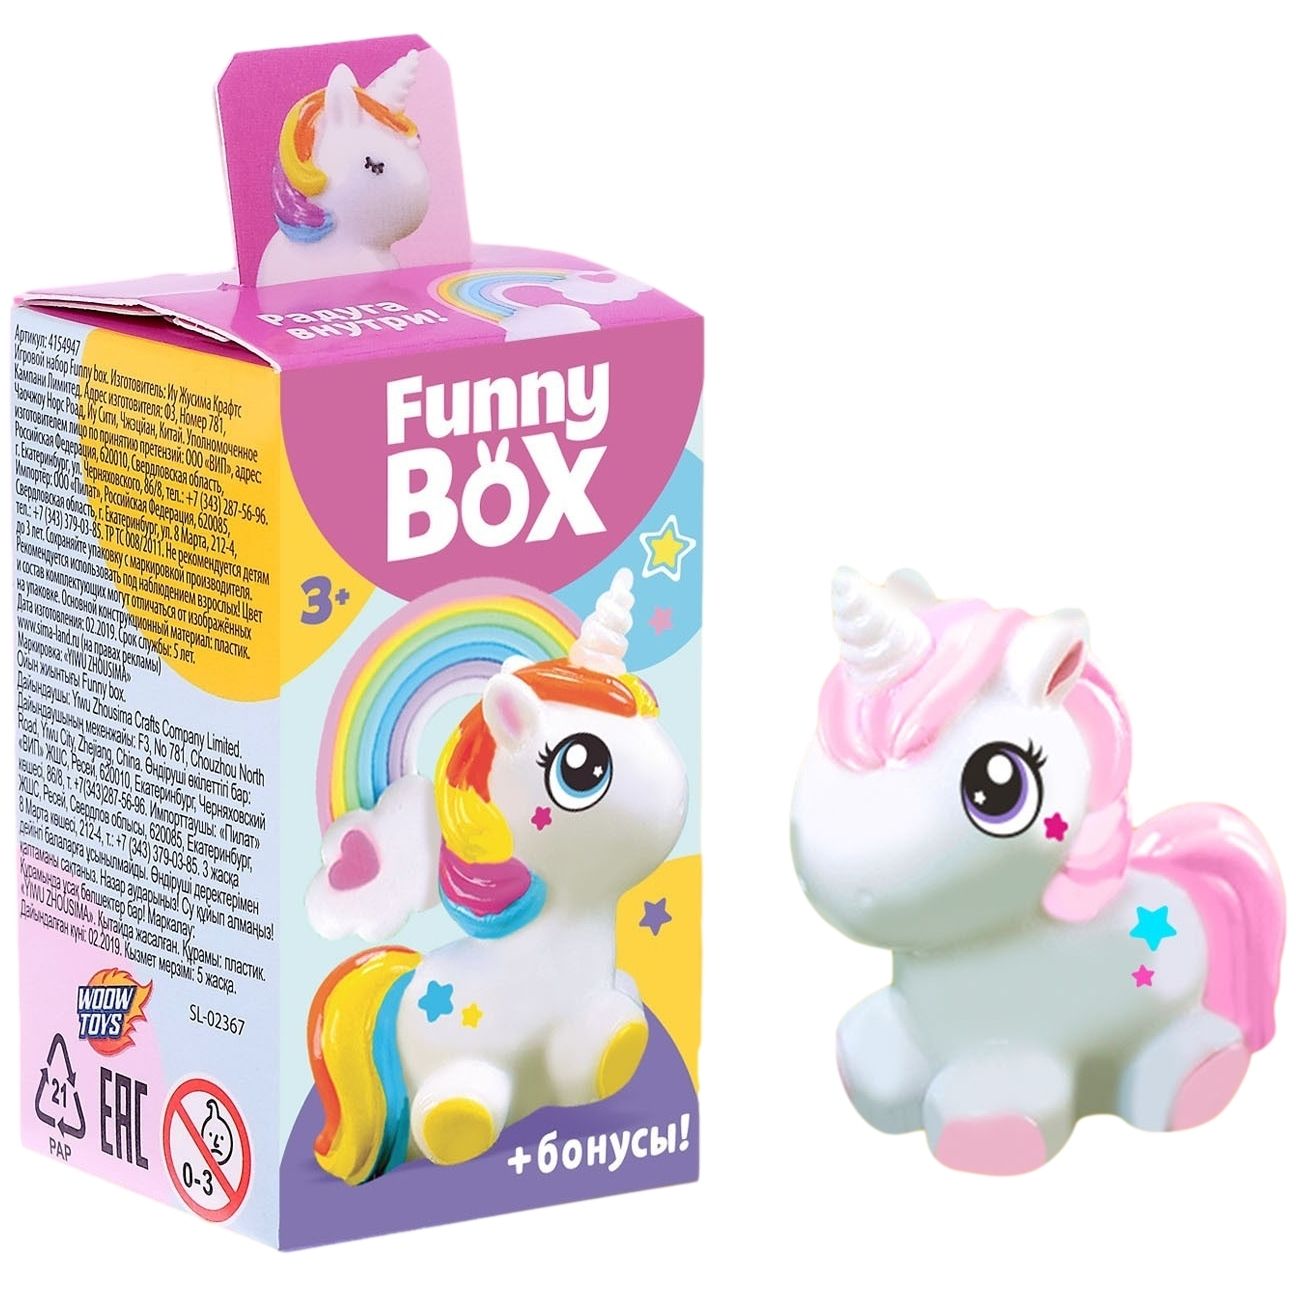 Funny Box игрушки. Набор для детей funny Box. Пони из боксов. Игрушки fun Box 2016. Веселка инструкция